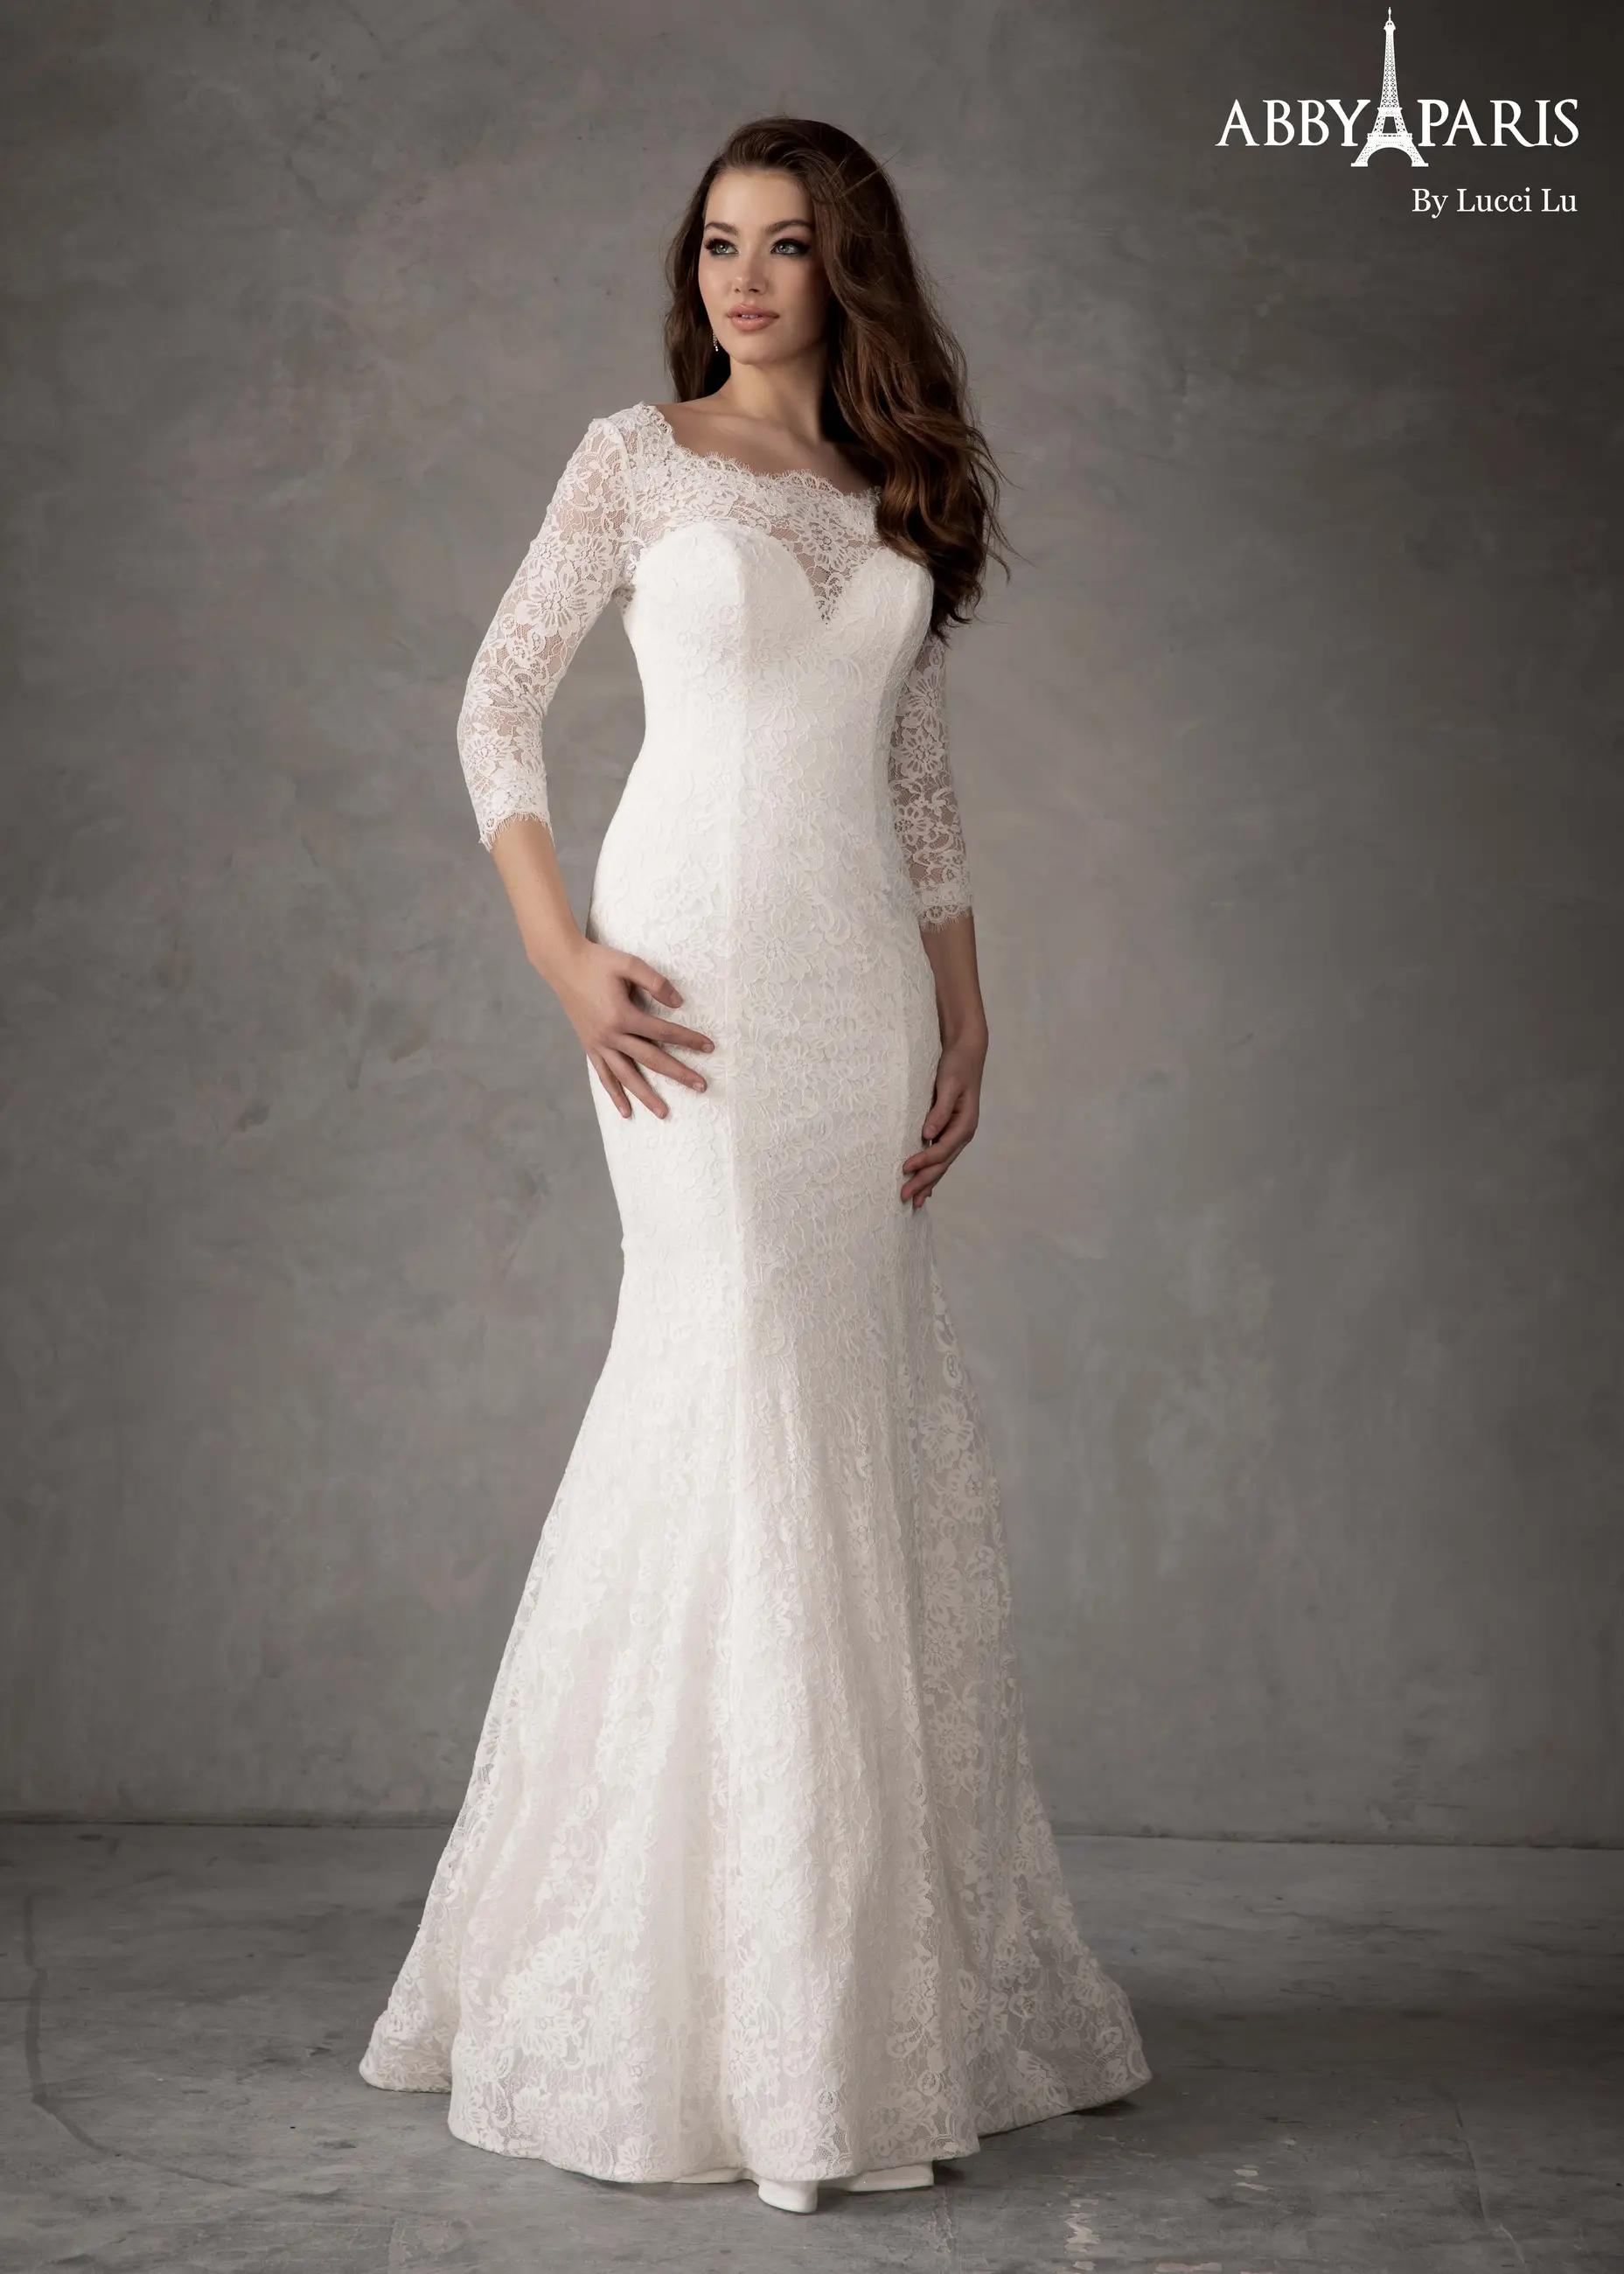 Model wearing a Lucci Lu Abby Paris white bridal dress